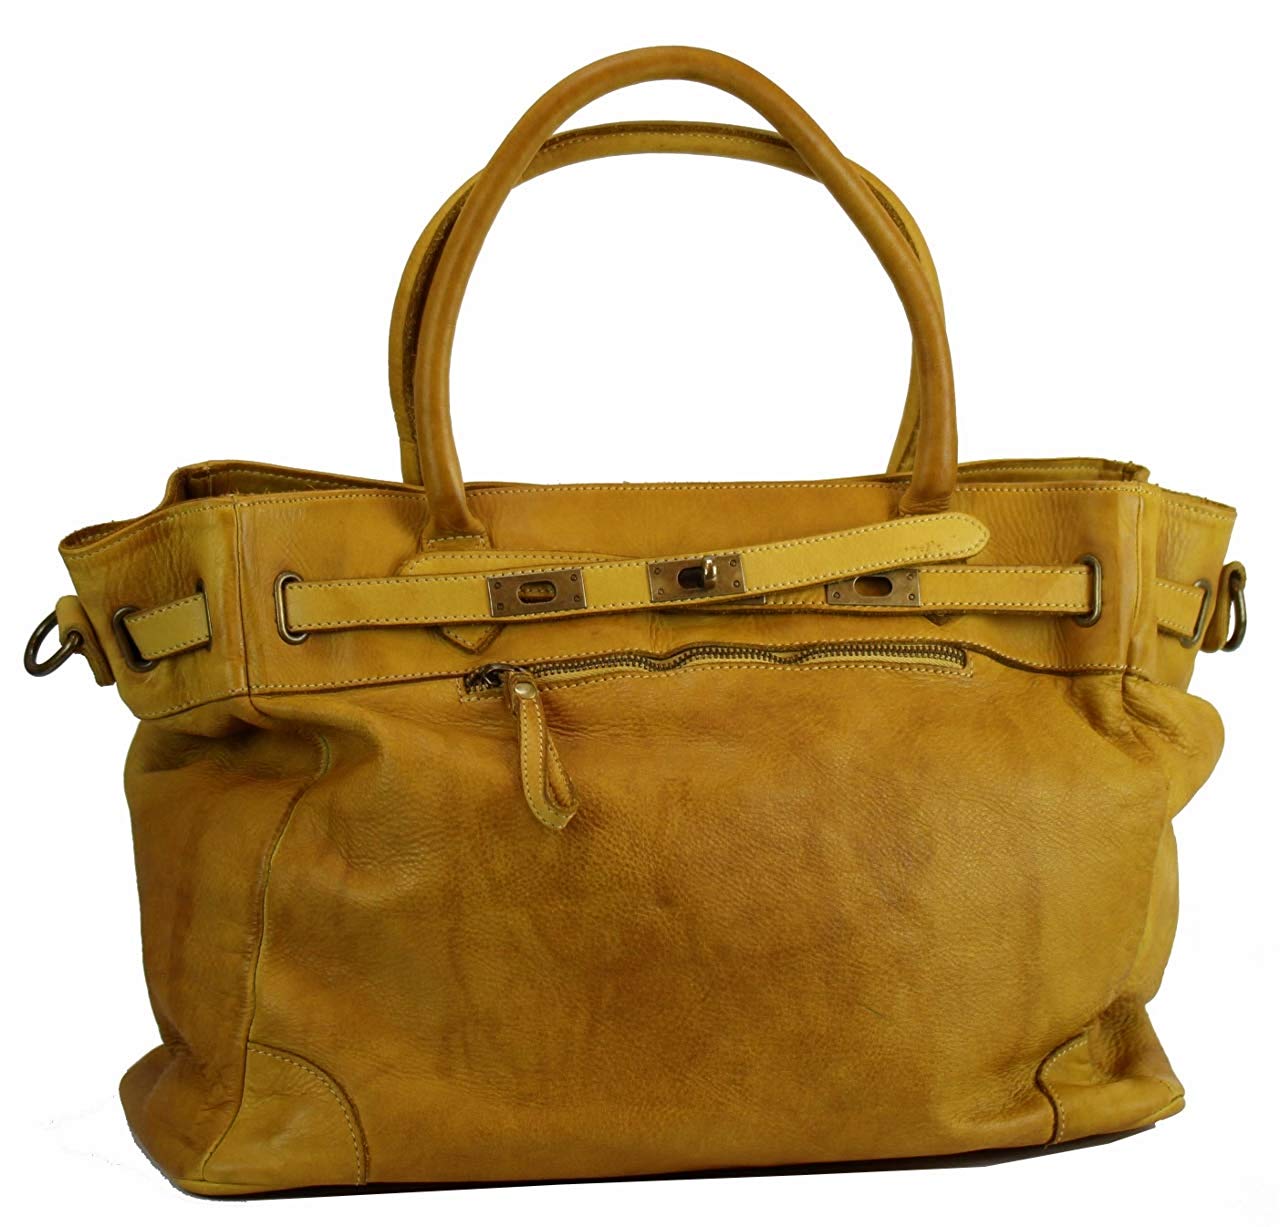 BZNA Bag Mila Gelb giallo vintage Italy Designer Business Damen Handtasche Ledertasche Schultertasche Tasche Leder Shopper Neu